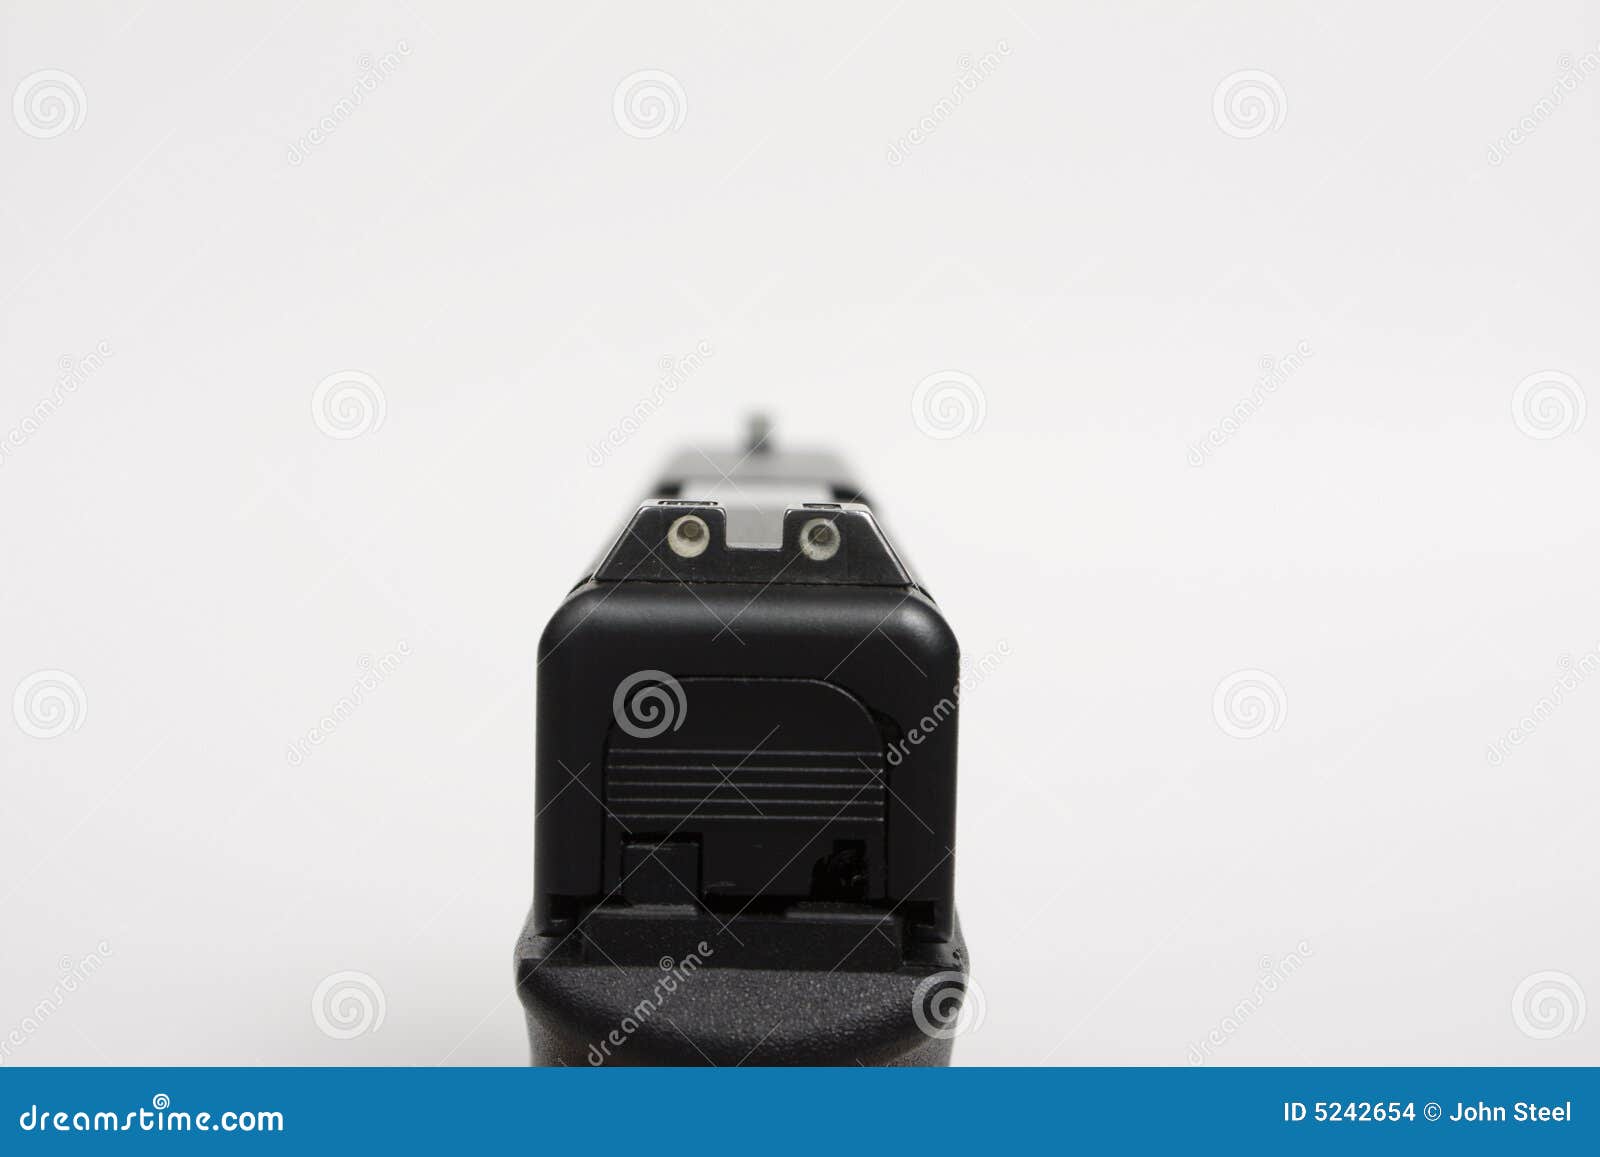 sights of a handgun